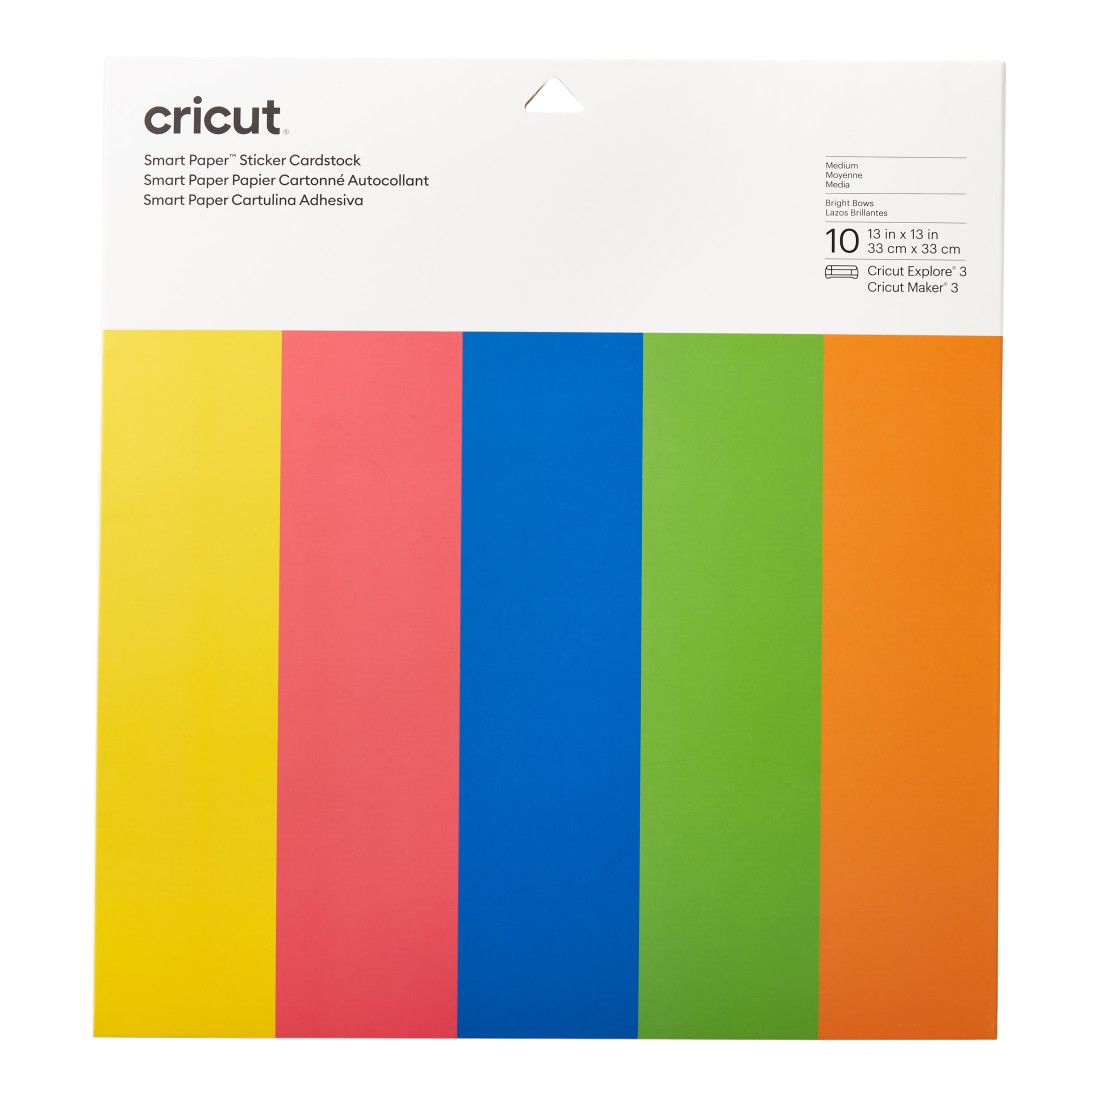 Cricut Smart Paper Sticker Cardstock (Bright Bow)